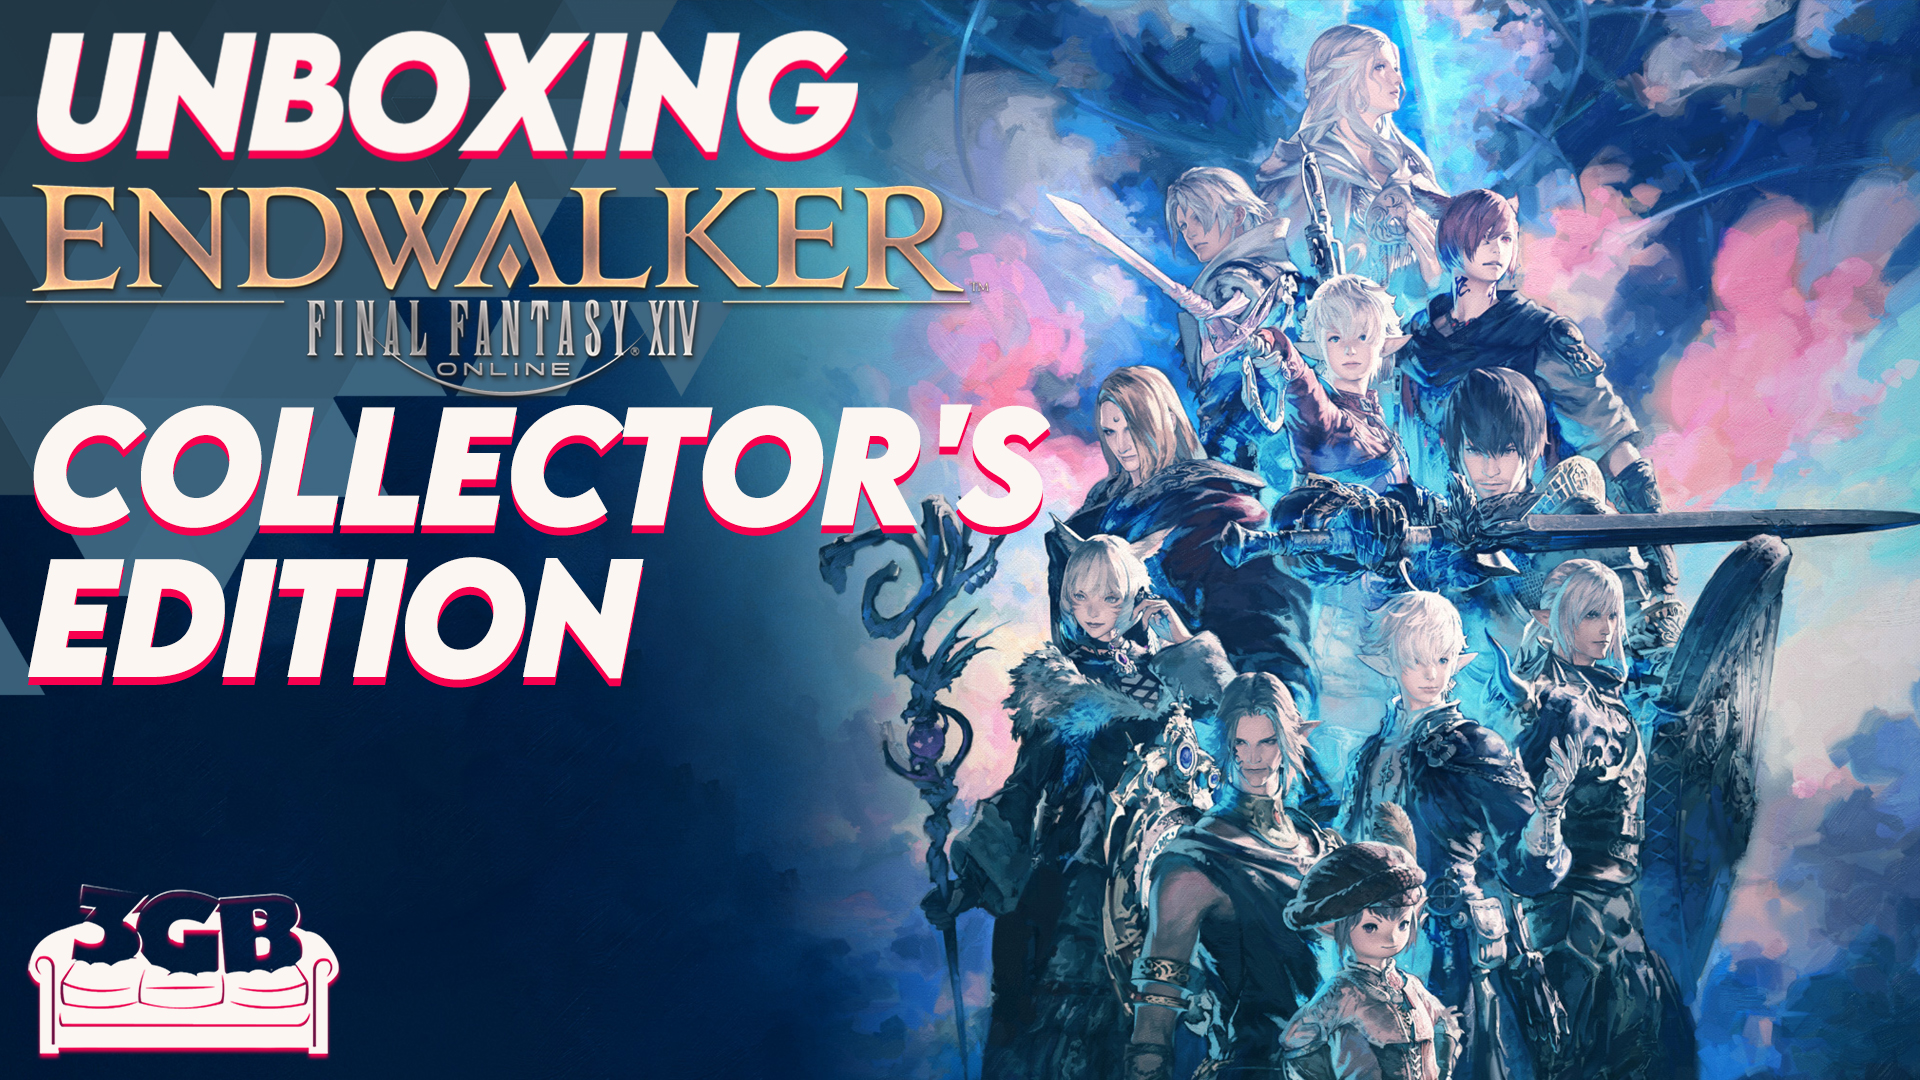 Unboxing Final Fantasy XIV: Endwalker Collector’s Edition